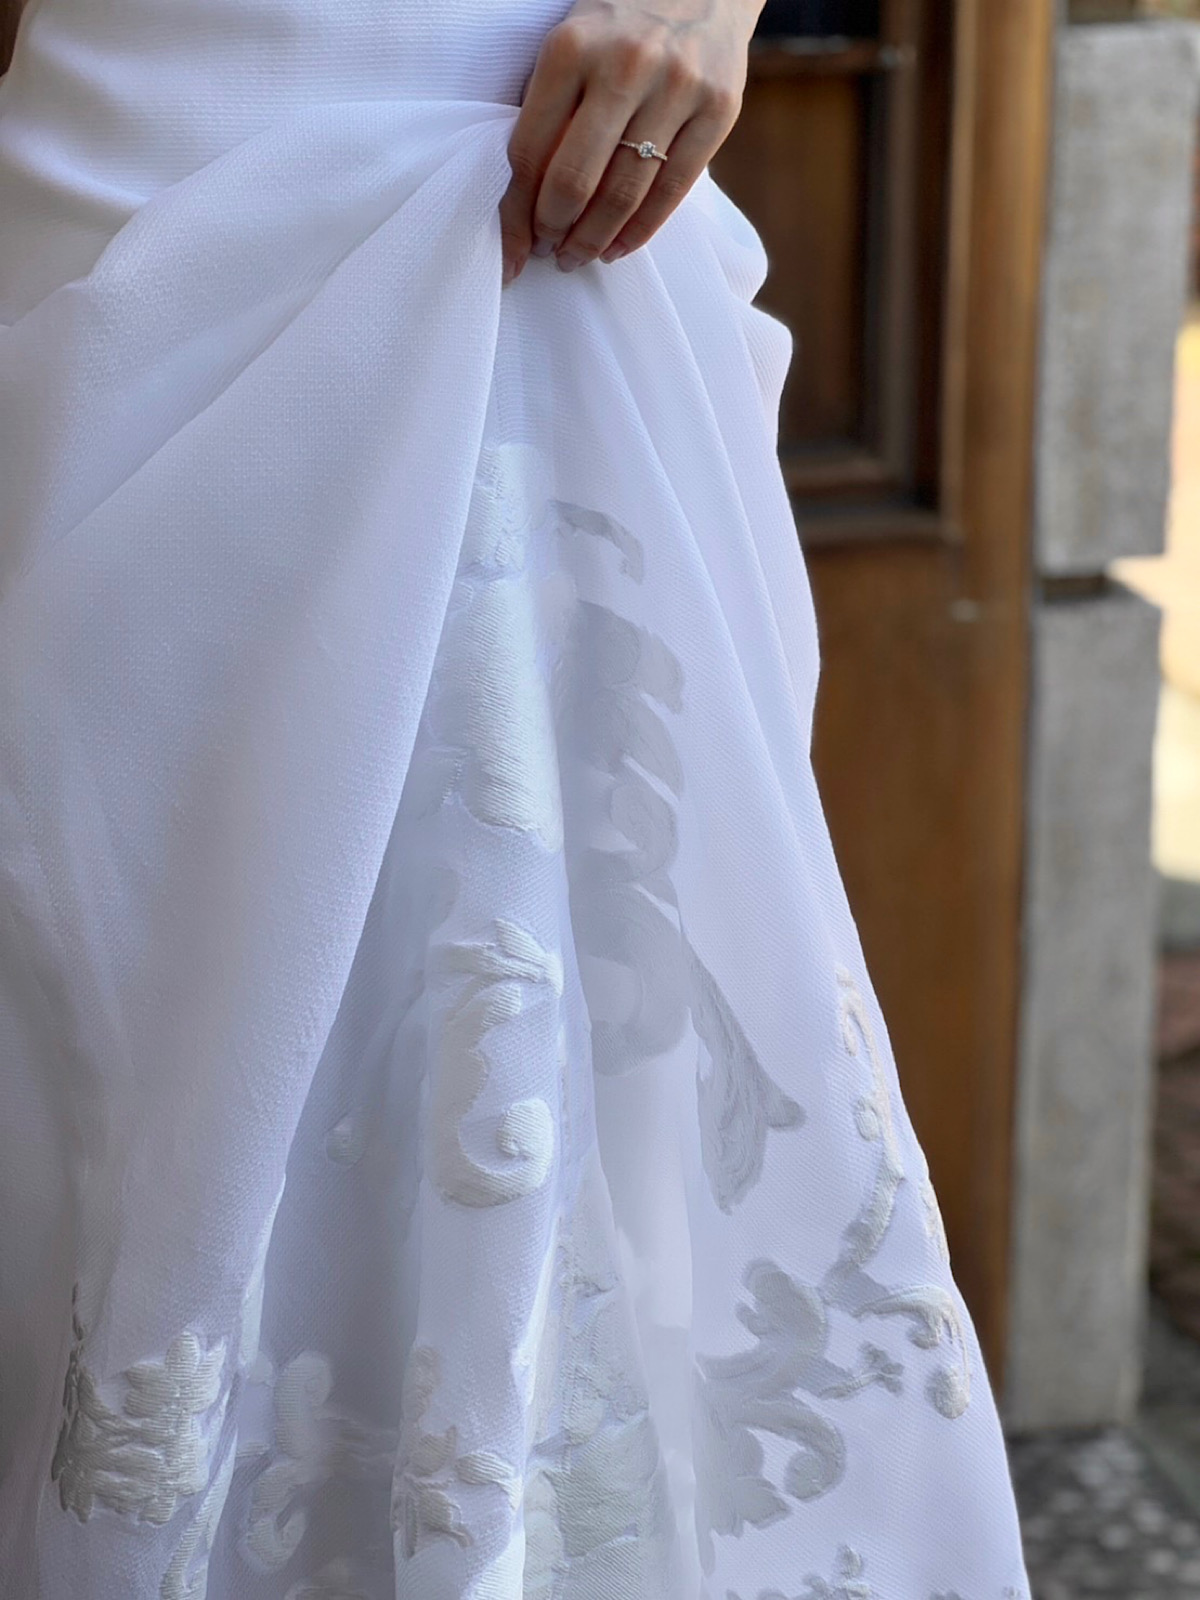 しなやかで柔らかいフィルクーペ生地にジャガードデザインが美しい、スレンダーラインの新作ウェディングドレス